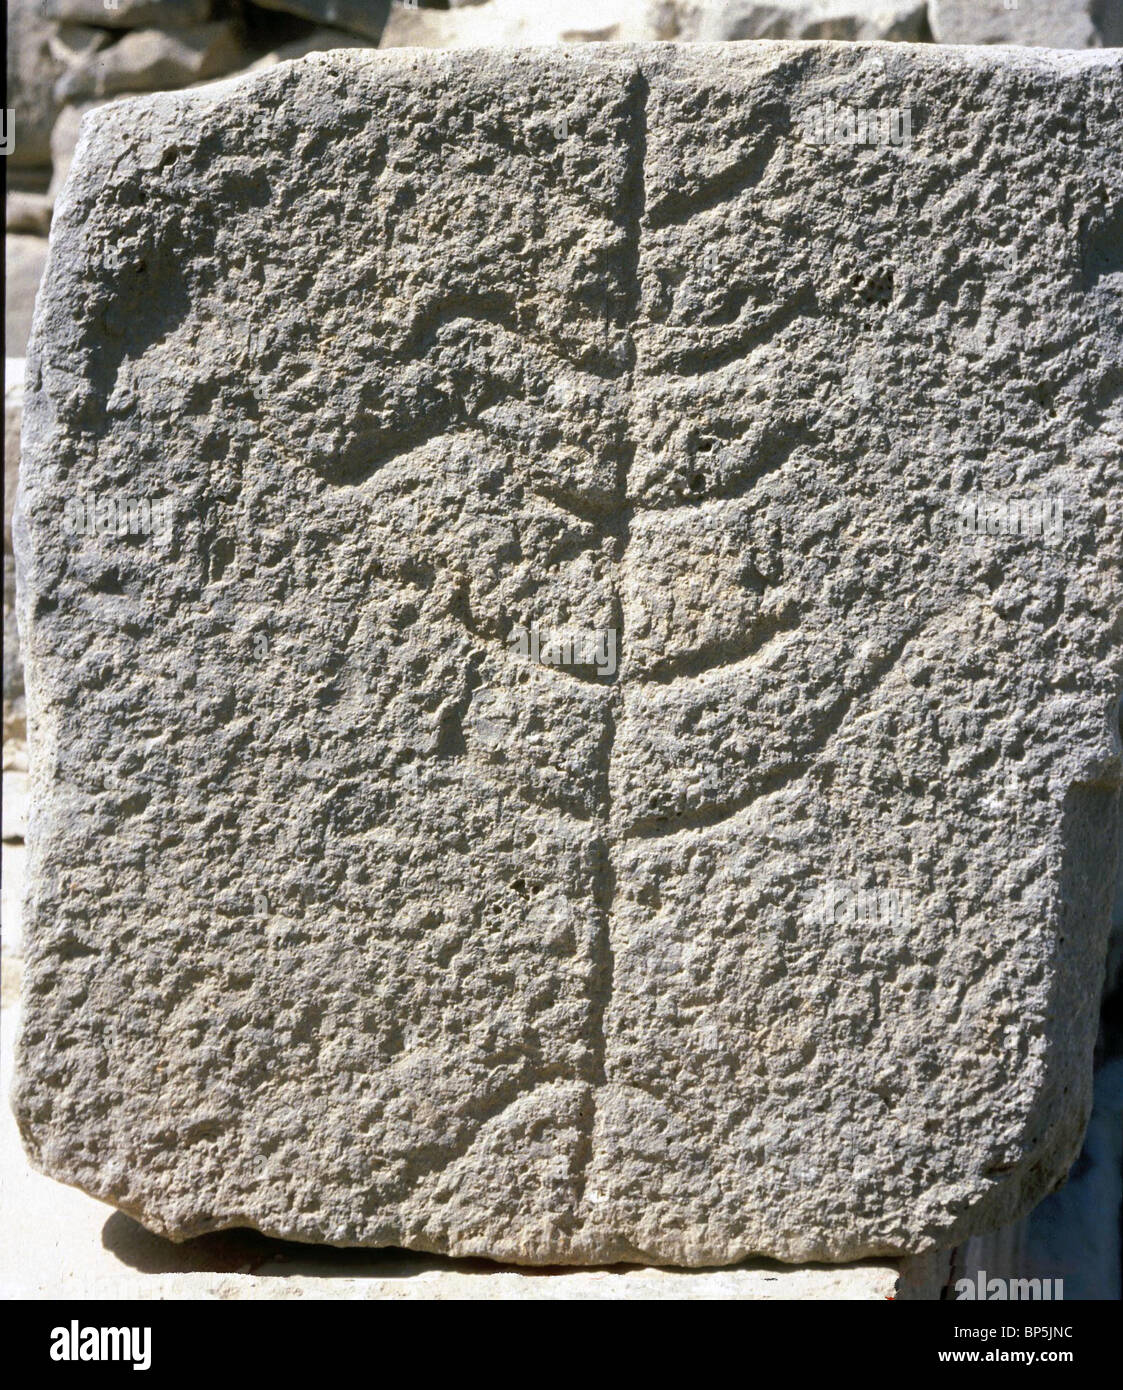 GOLAN KATZRIN SYNAGOGUE C. 5-6Th. C. AD. Détails d'architecture sculpté dans la pierre de basalte LOCALE REPRÉSENTANT L'ARBRE DE VIE Banque D'Images